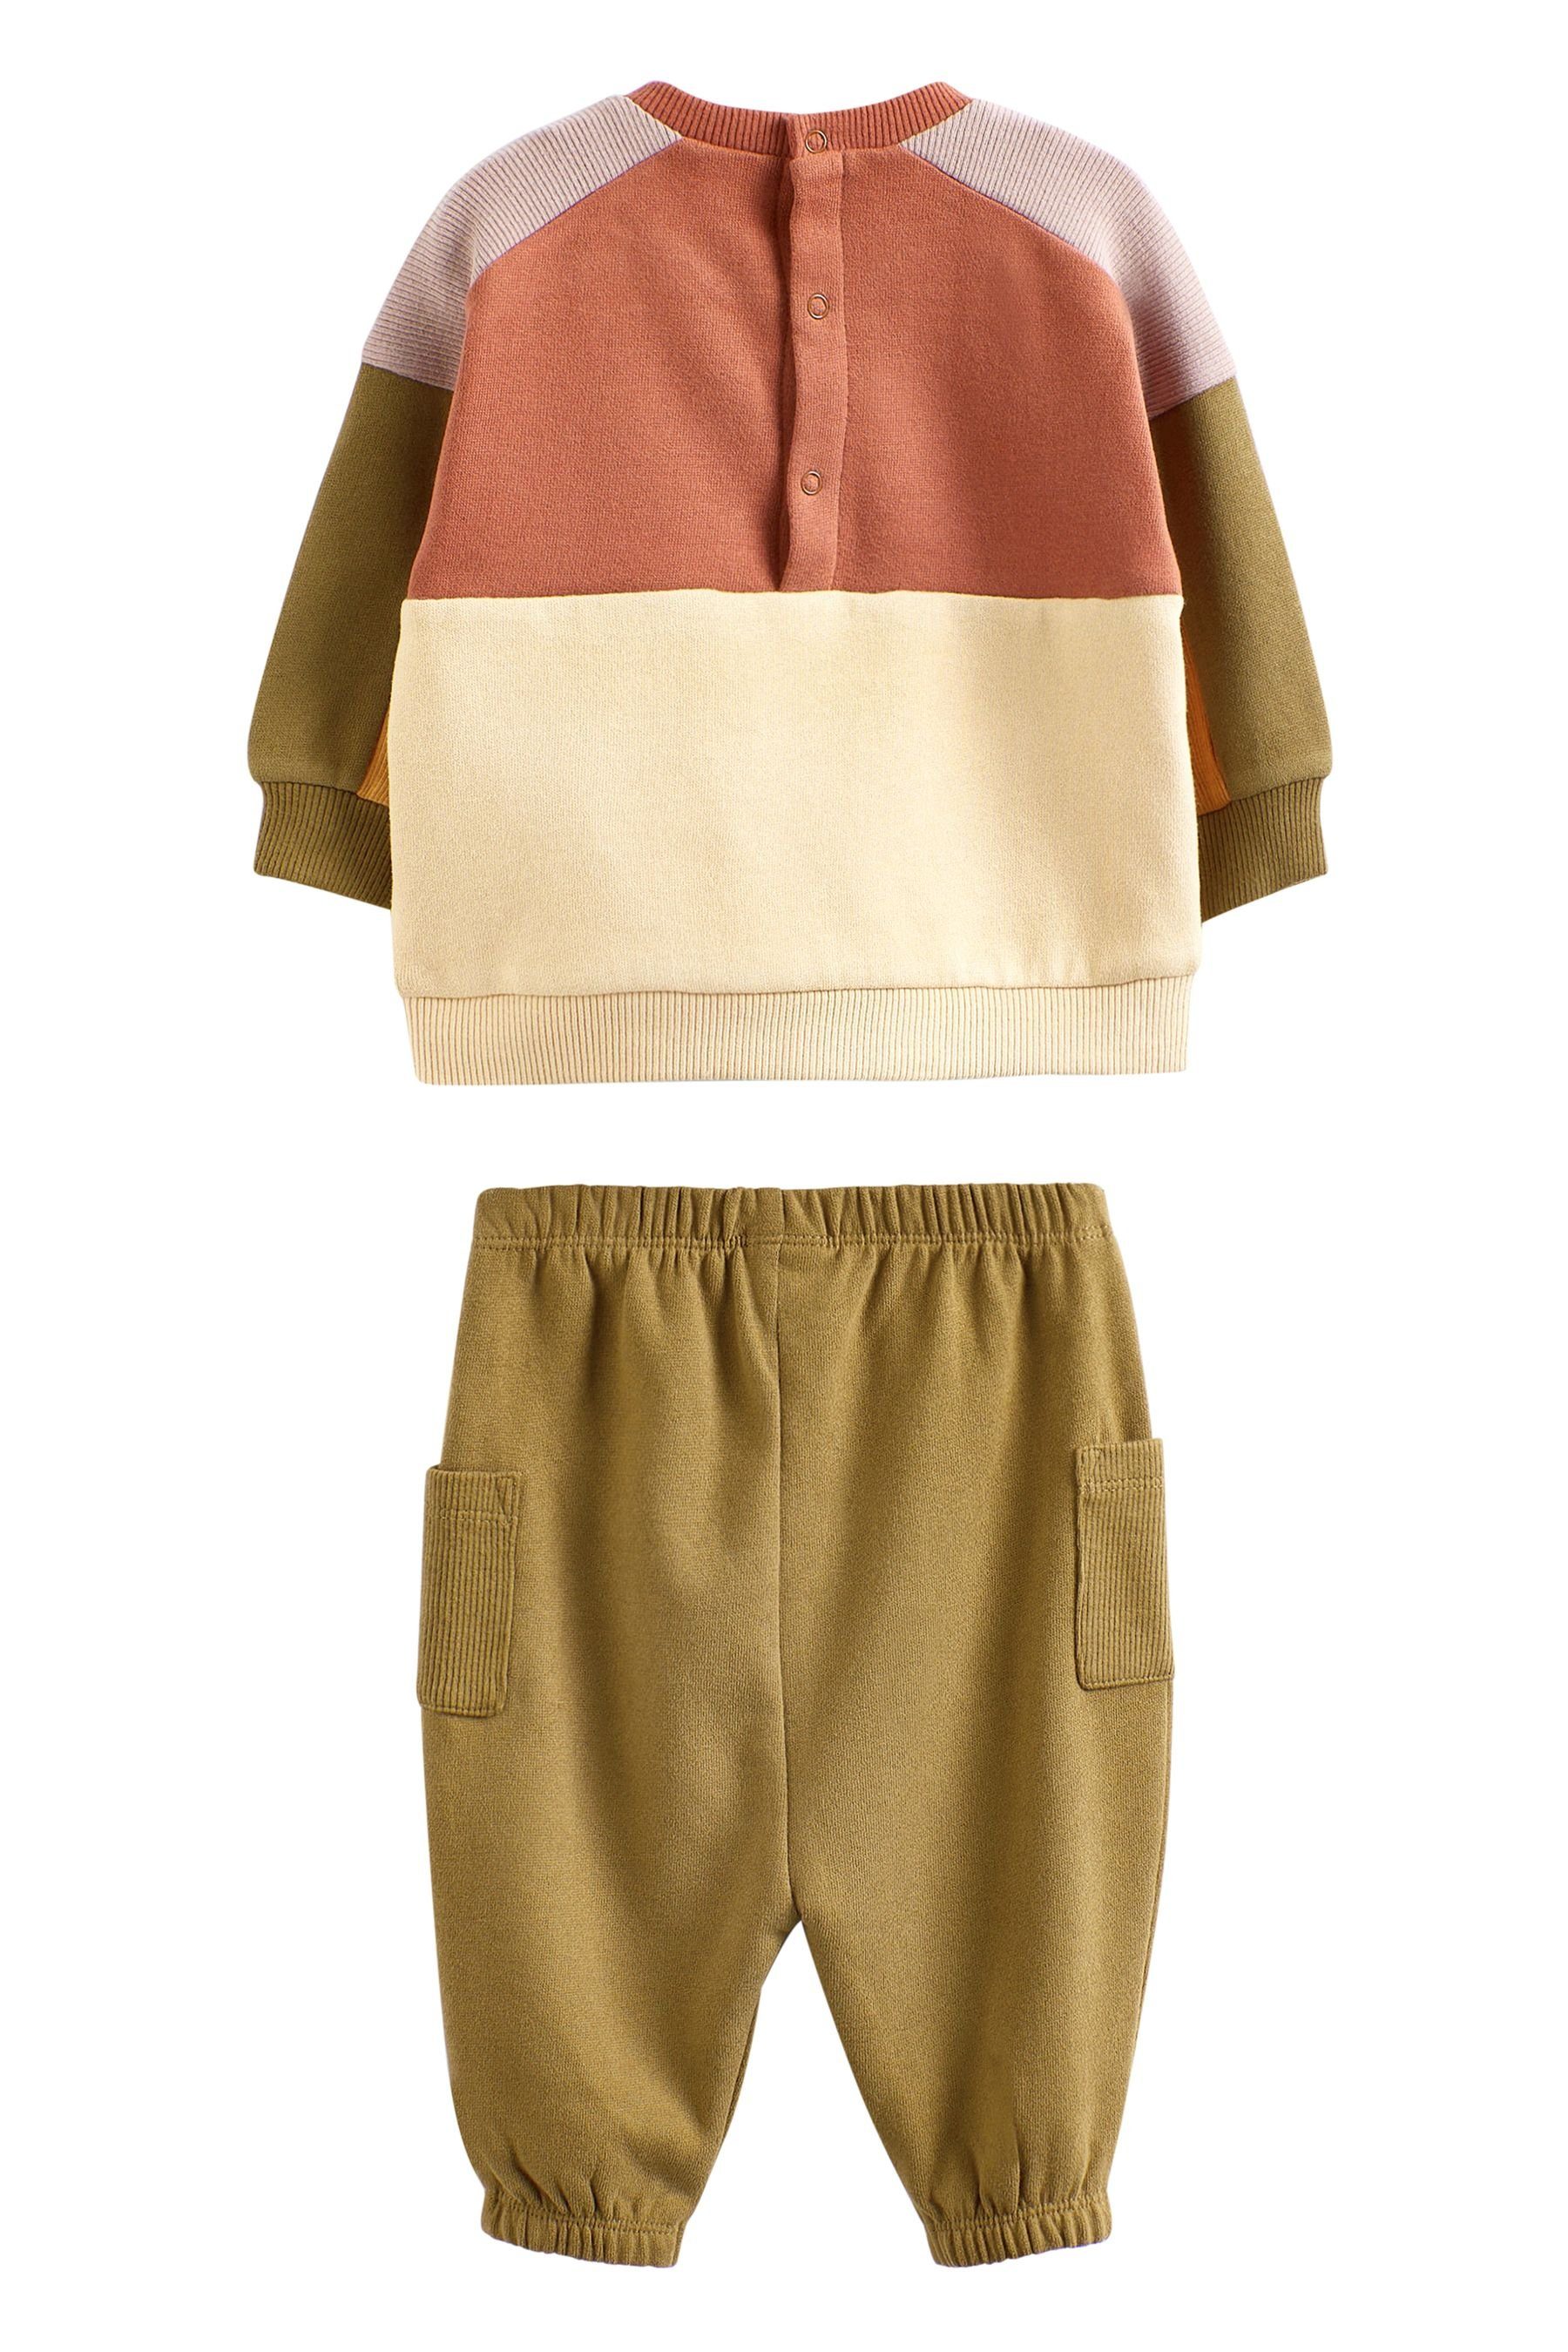 Next Sweatanzug (2-tlg) 2-teiliges Sweatshirt mit Baby-Set Green/Cream Colourblock und Jogginghose